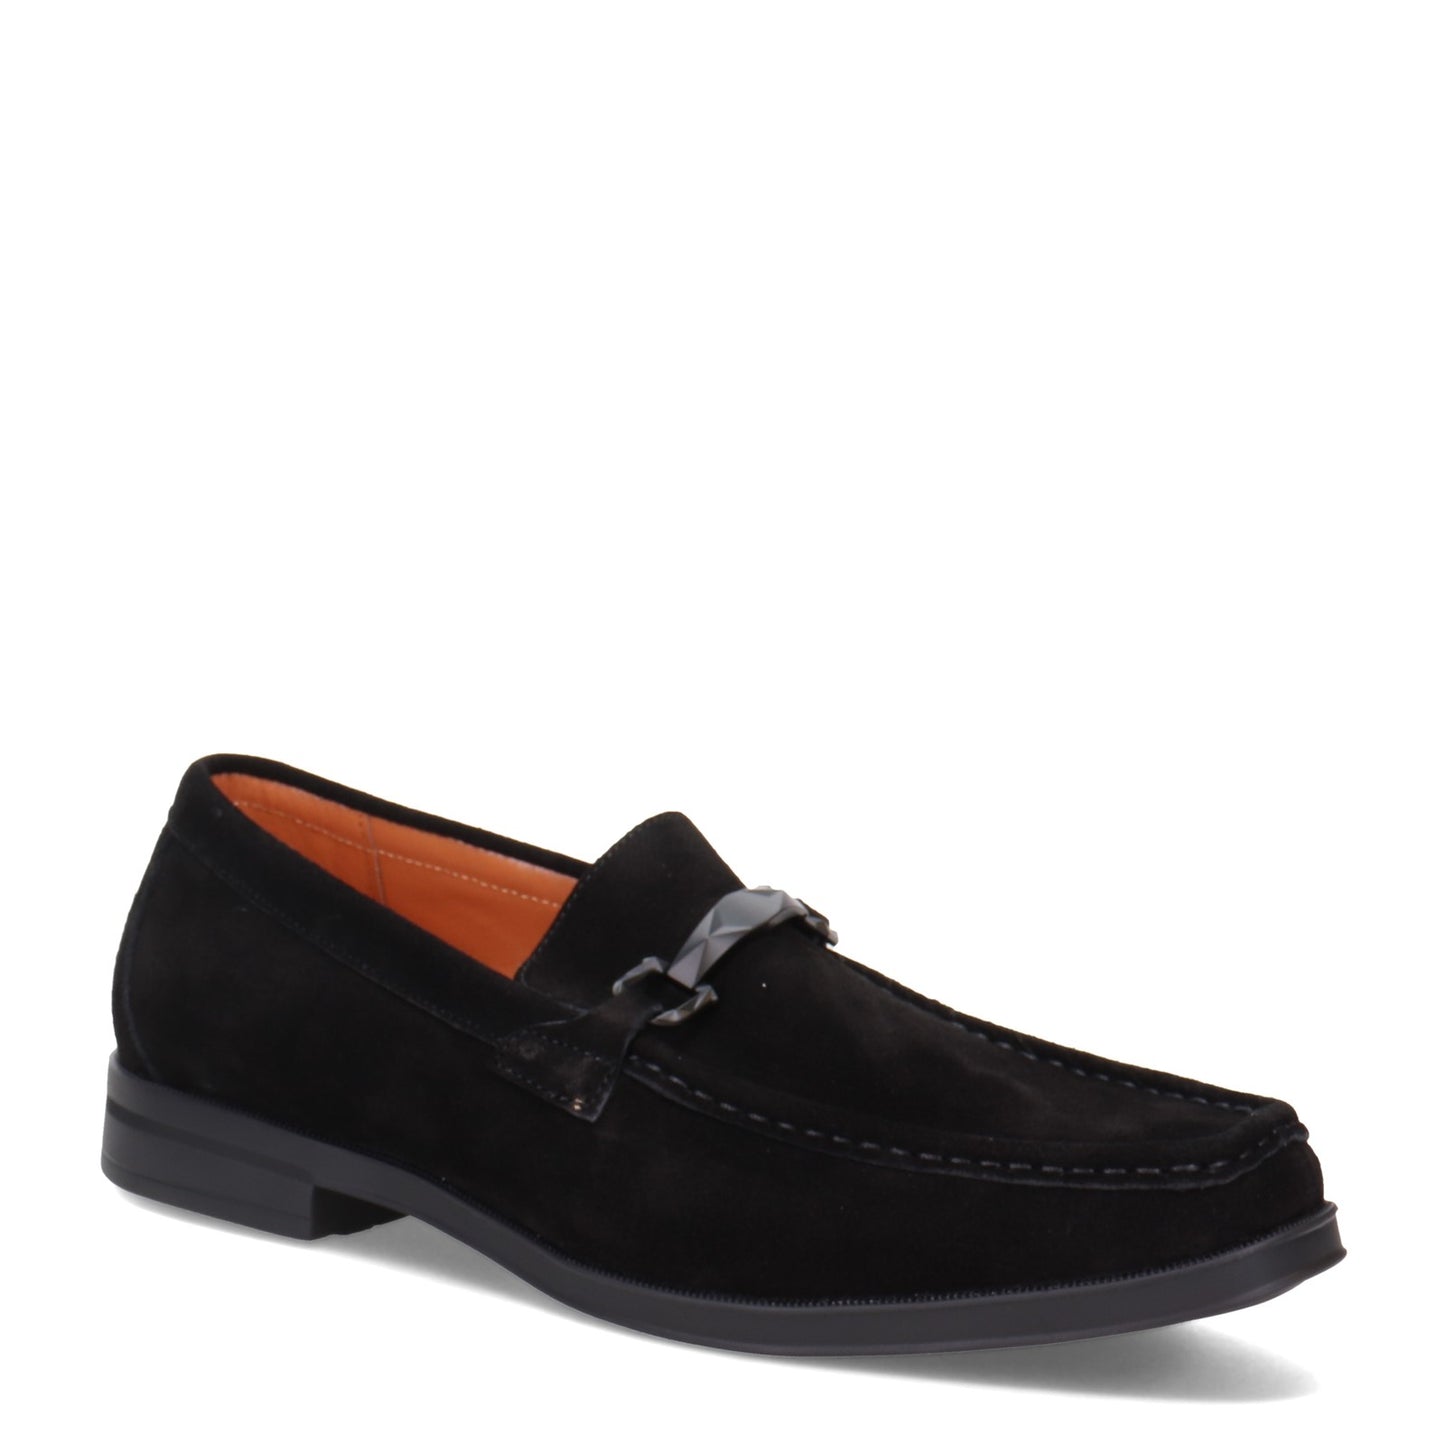 Peltz Shoes  Men's Stacy Adams Paragon Loafer BLACK SUEDE 25485-008